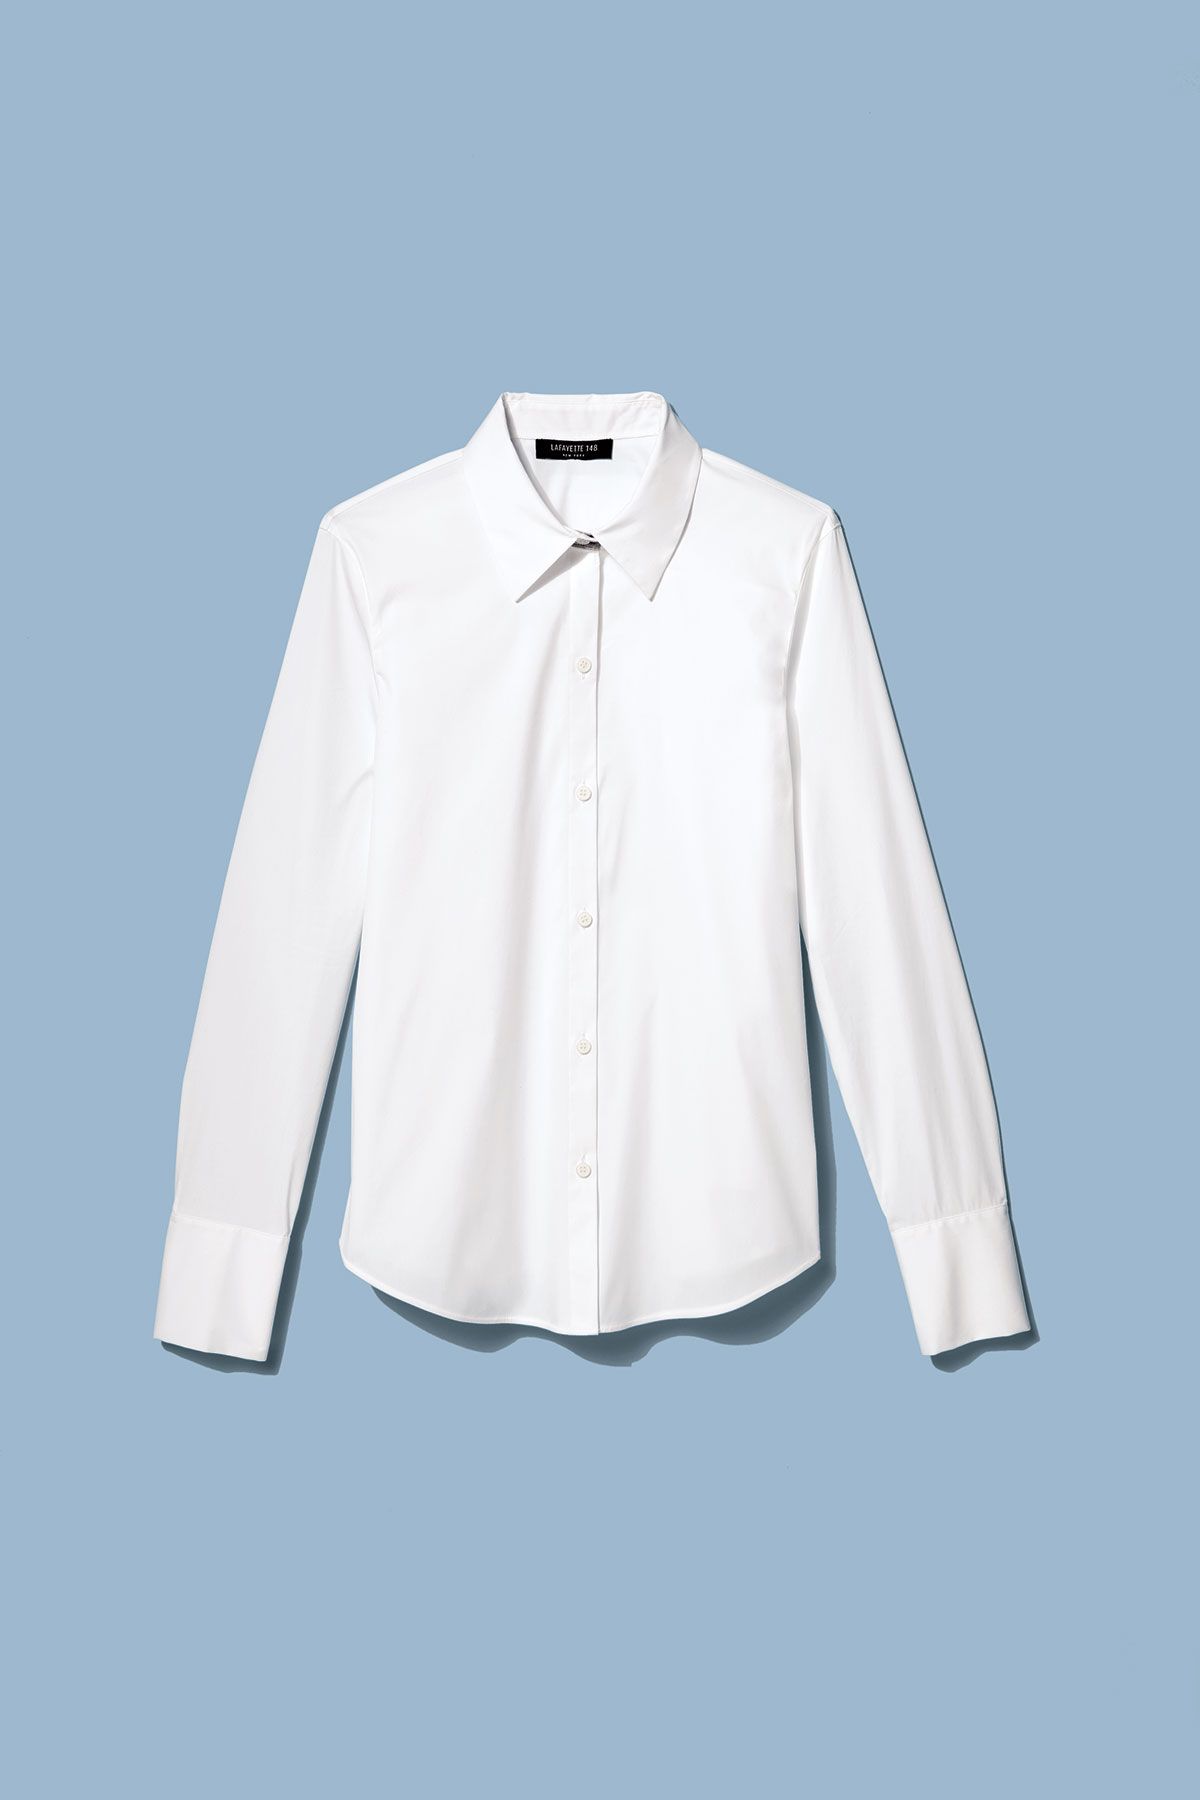 Lafayette 148 Italiaanse stretch katoenen linley blouse